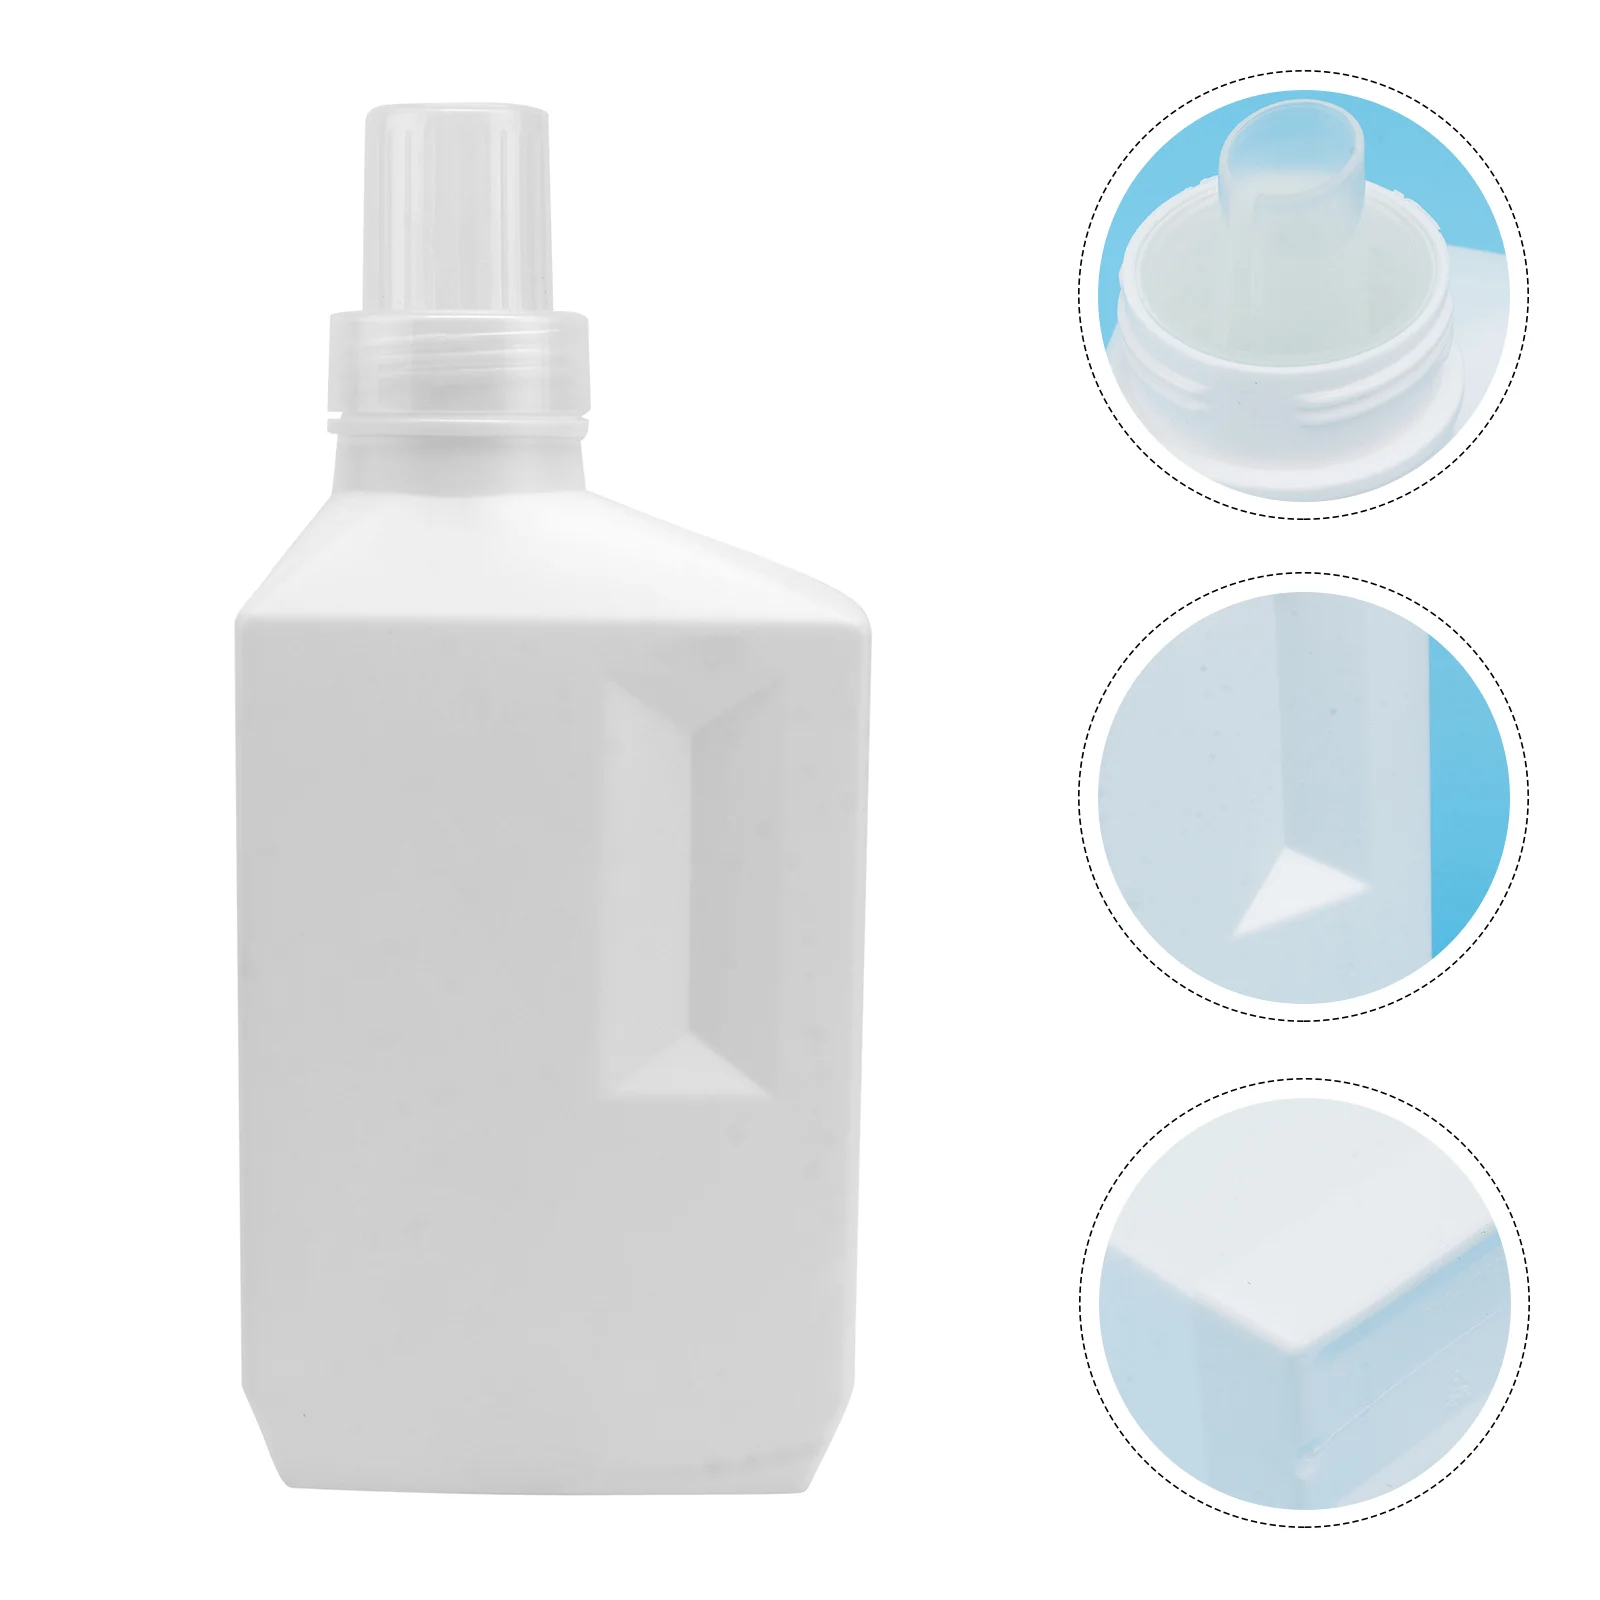 bouteille-de-detergent-liquide-en-plastique-de-1000ml-1-piece-pour-lotion-pratique